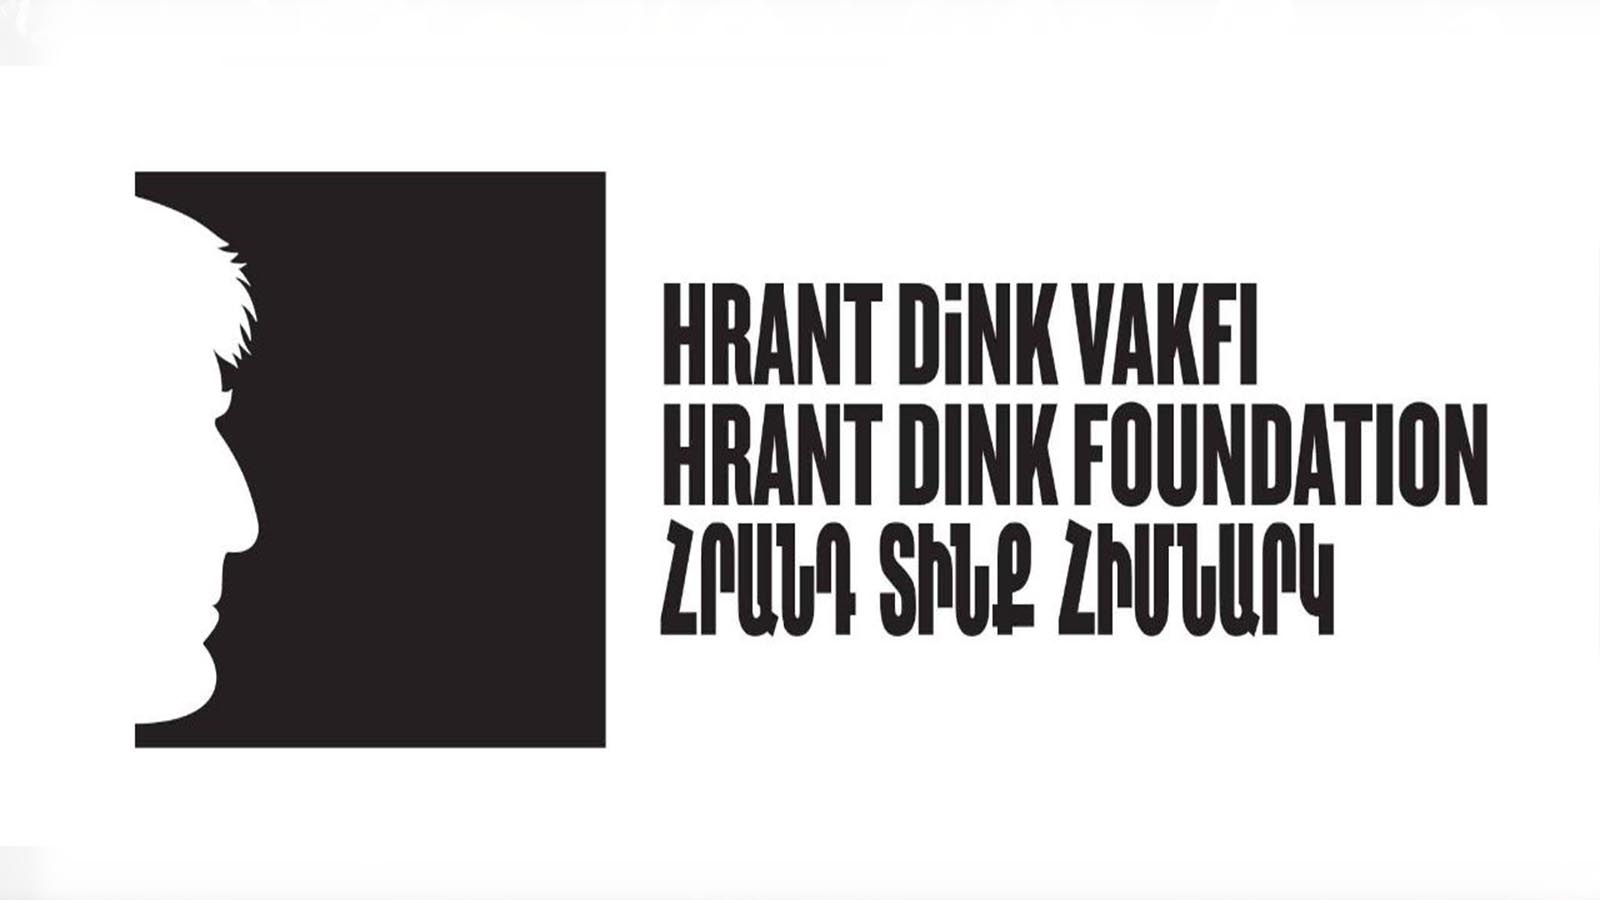 CHP, HDP, DEVA ve Gelecek Partisi'nden Hrant Dink Vakfı'na destek mesajları